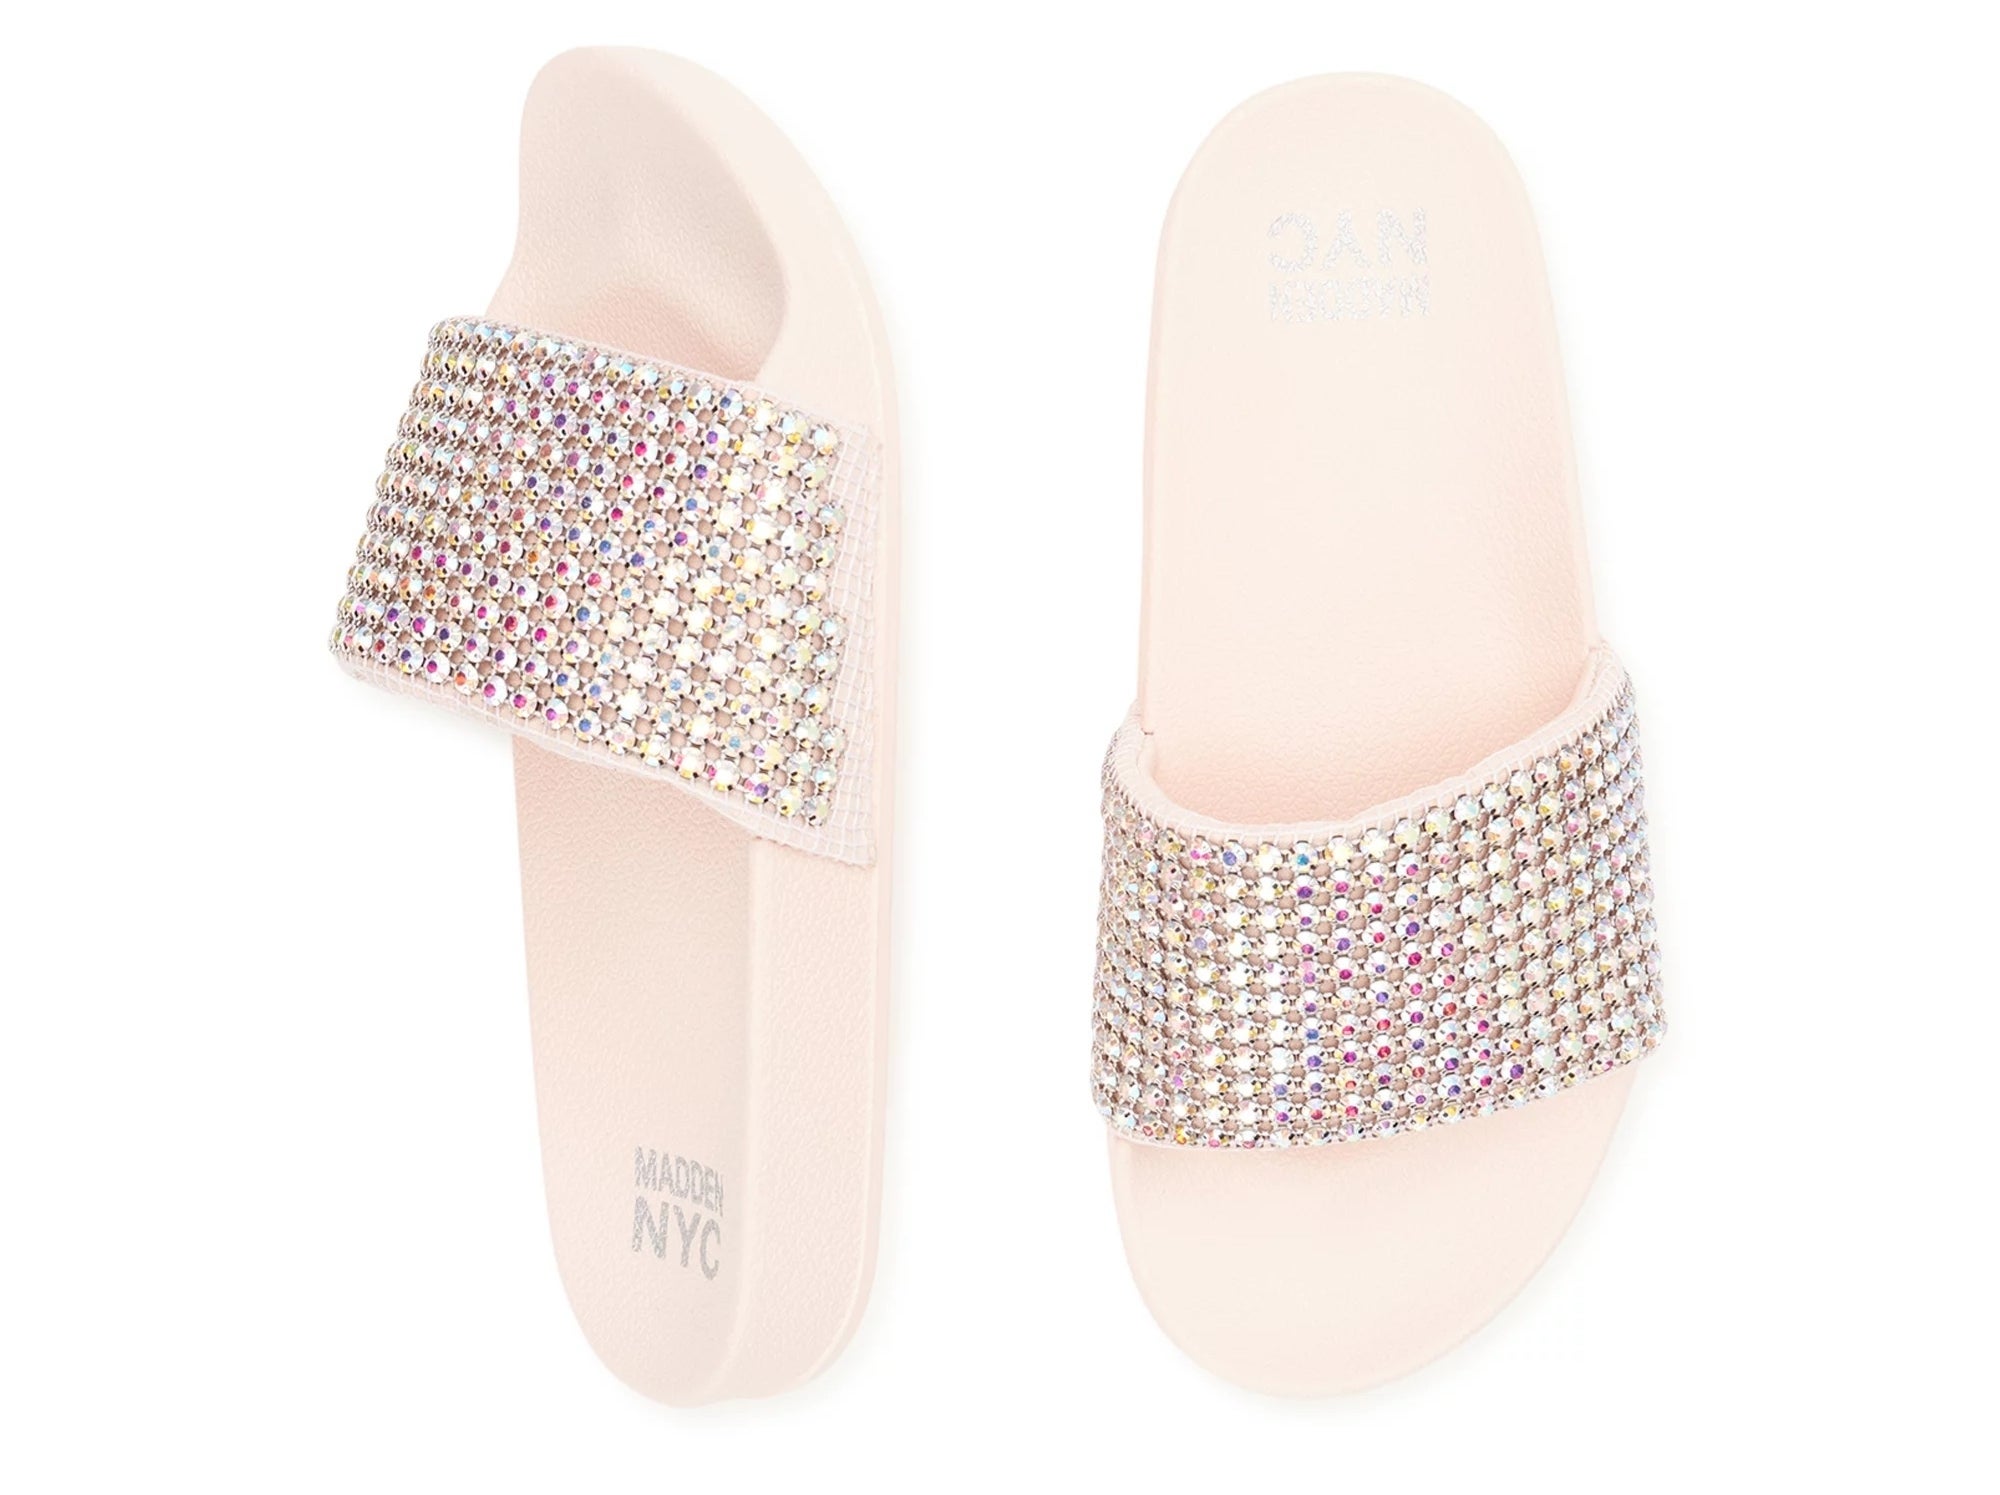 The embellished slide sandals